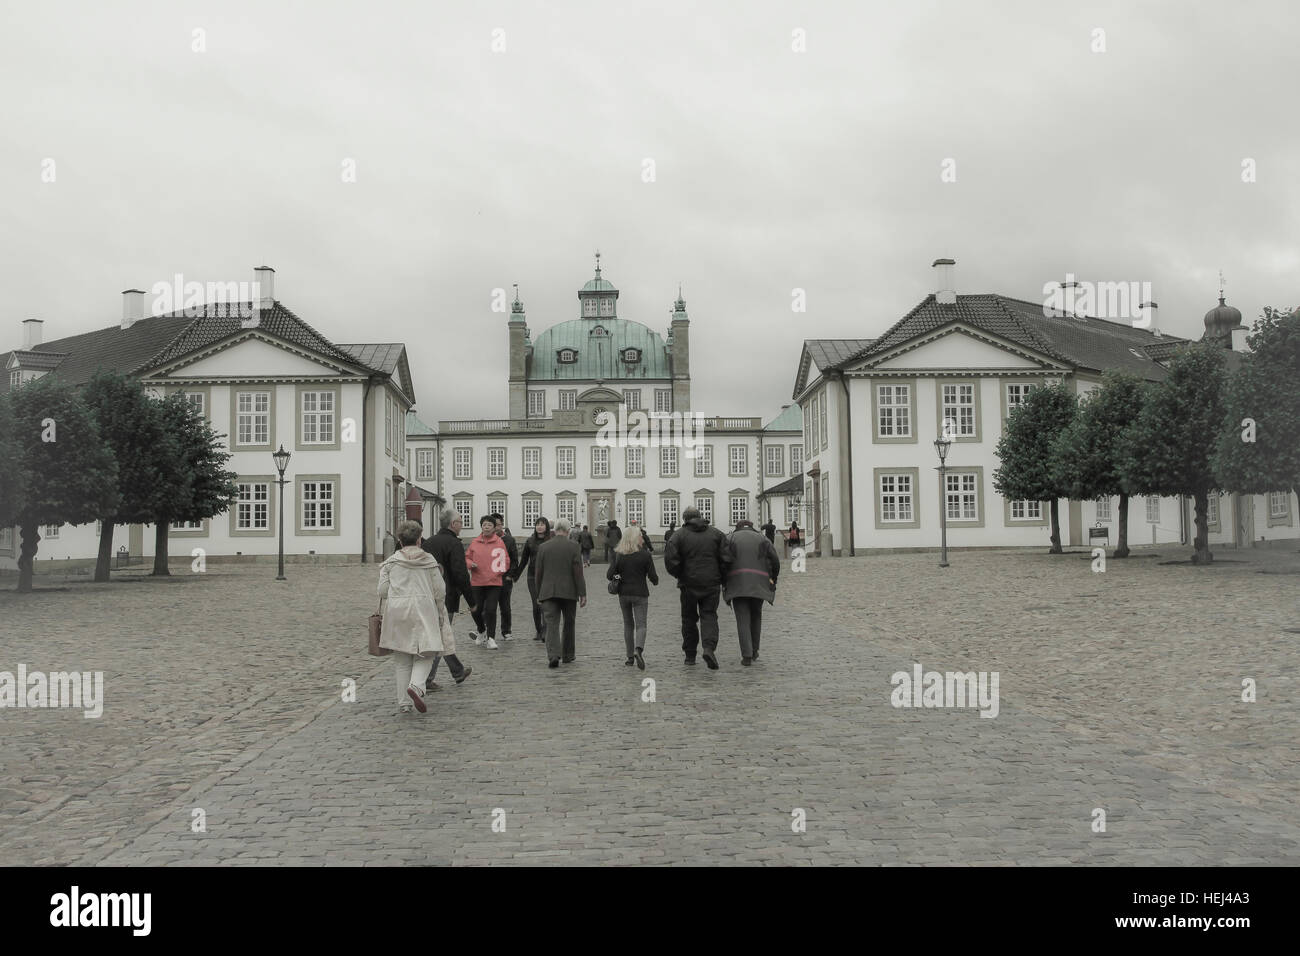 Copenhagen, Danimarca - 2 Ottobre 2016: persone che visitano i motivi del Queen's Summer Palace, Fredensborg a Copenhagen, Danimarca e Scandinavia Foto Stock